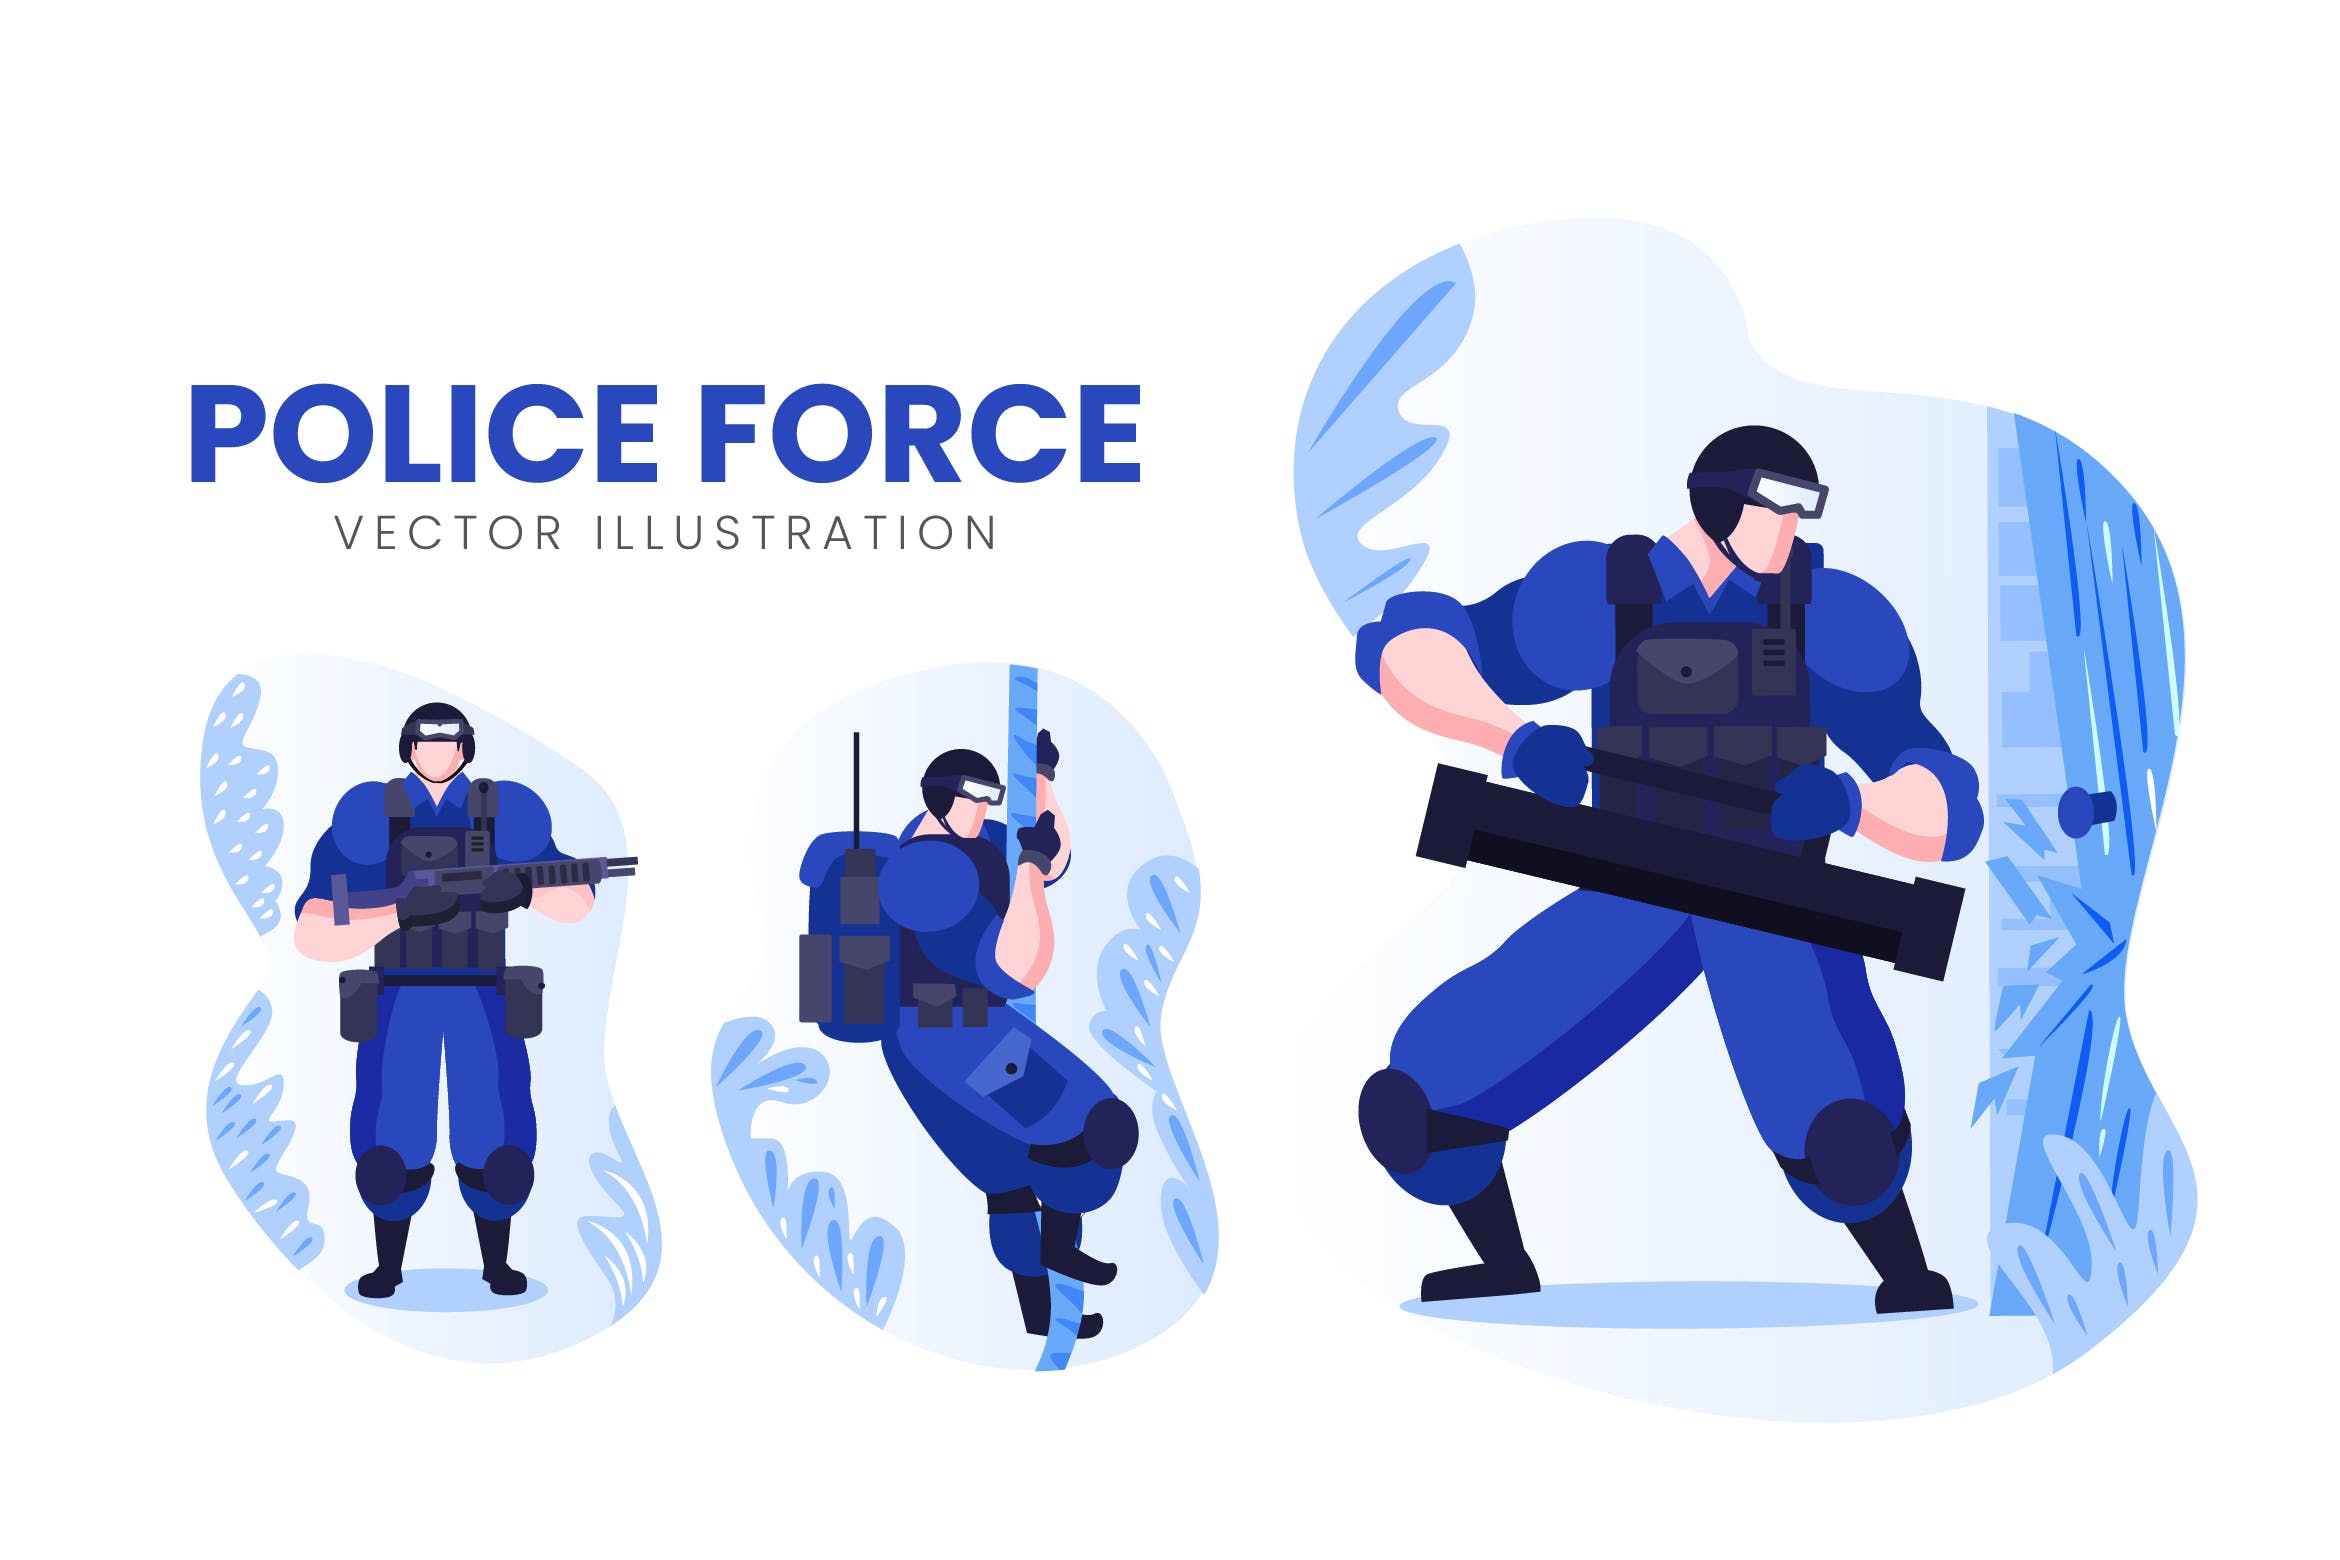 警察人物形象第一素材精选手绘插画矢量素材 Police Force Vector Character Set插图